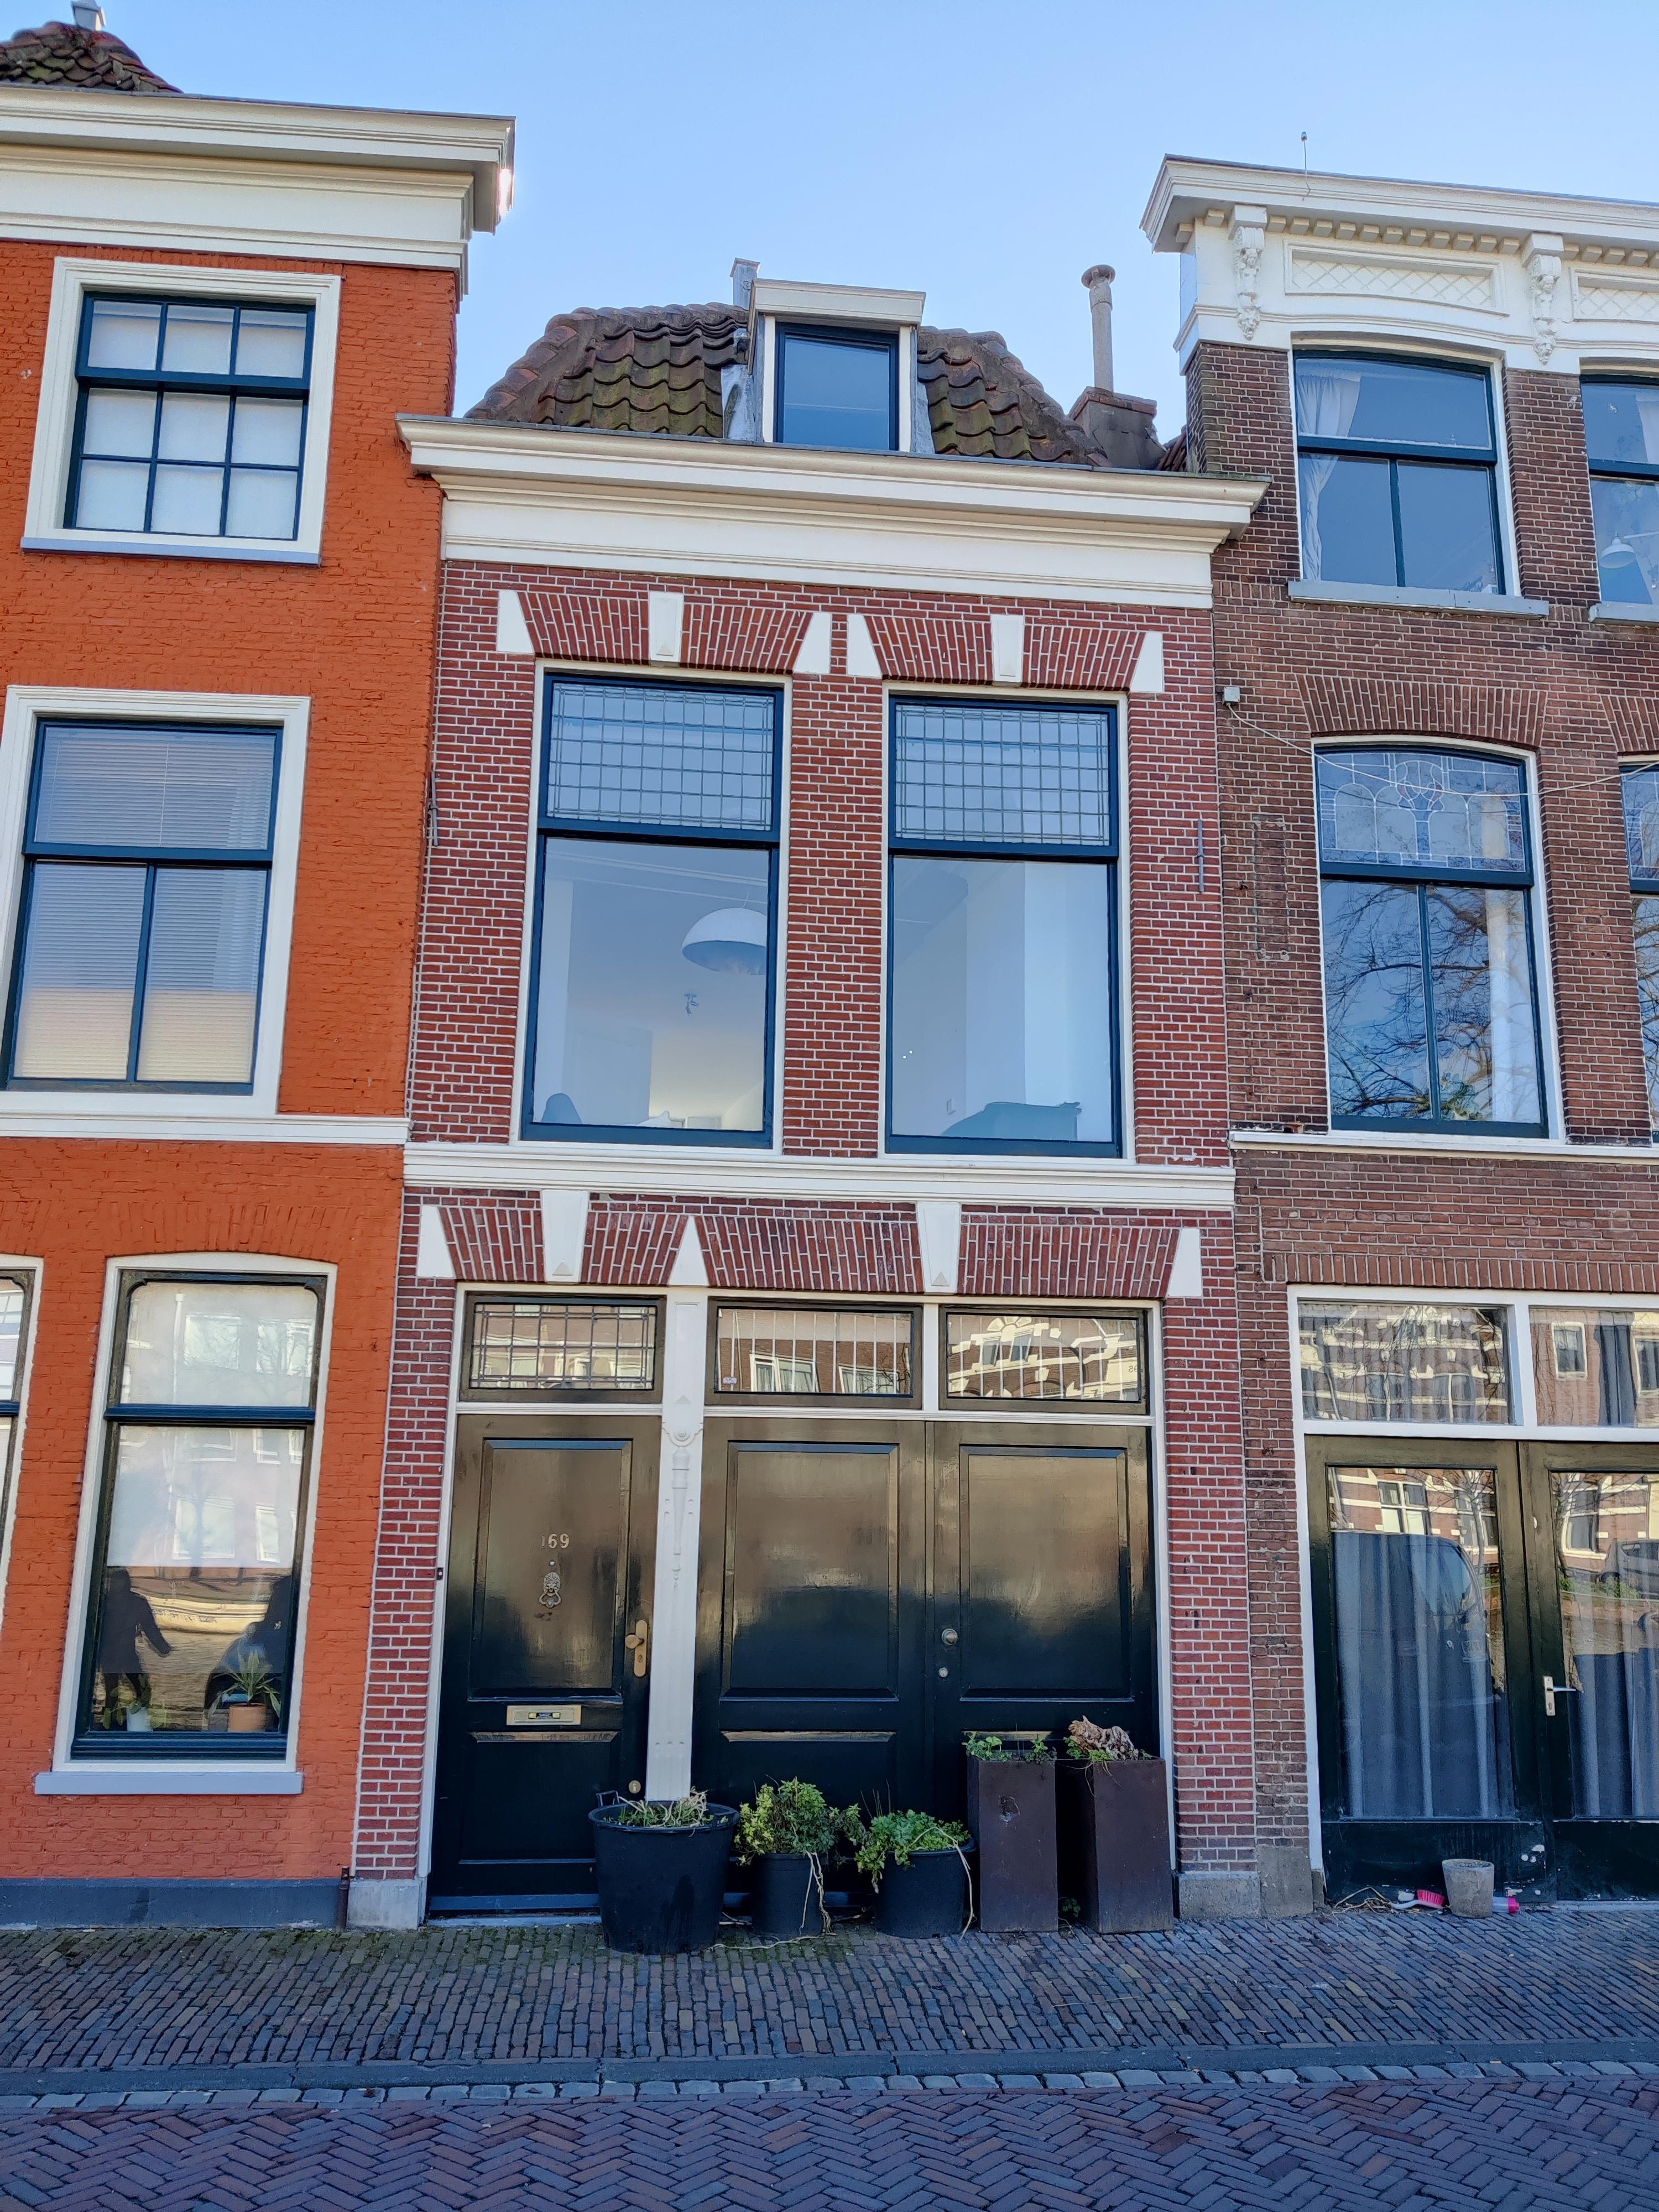 Bekijk foto 1/49 van house in Leiden